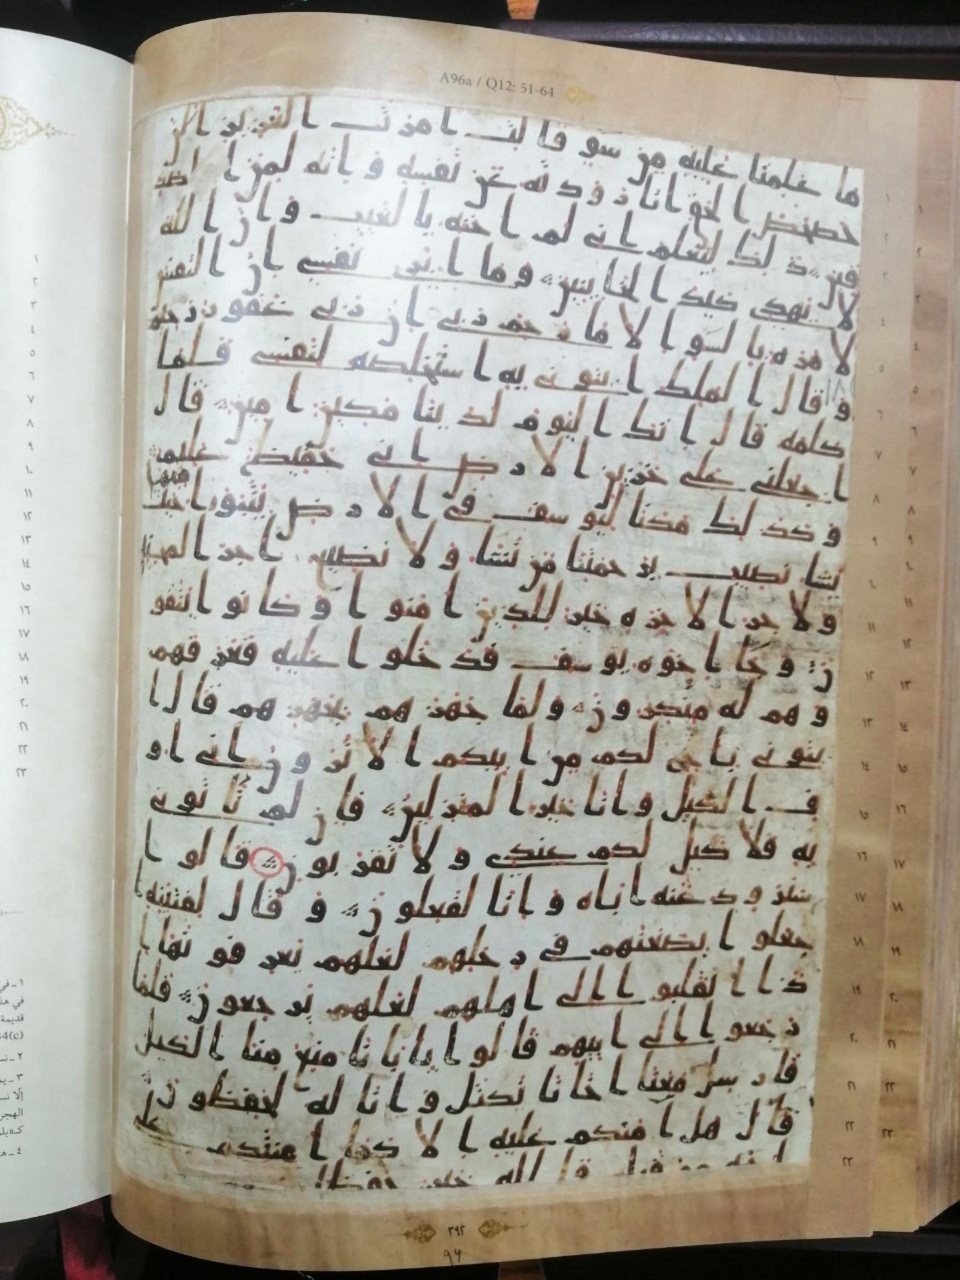 إهداء نسخة مصورة من مخطوط قرآني نادر إلى خزانة العتبة العباسية

